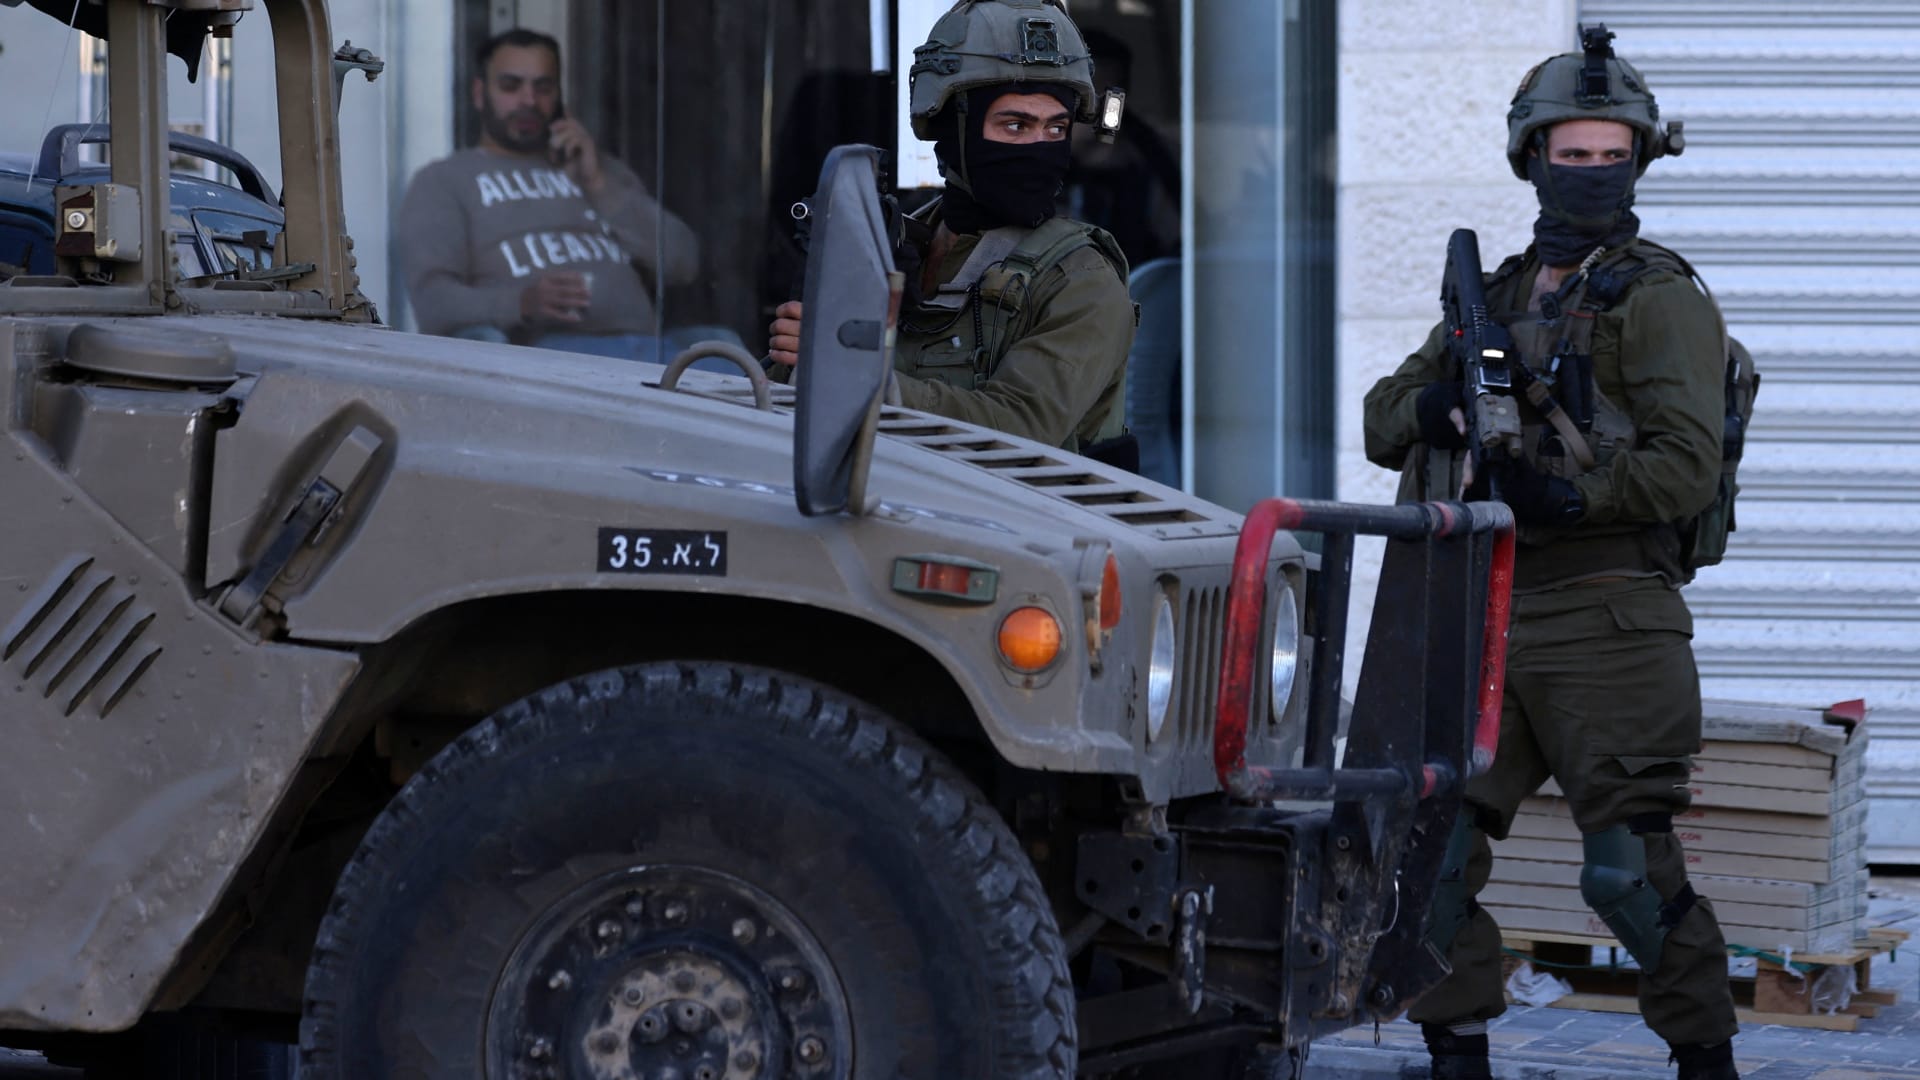 جماعة "عرين الأسود" الفلسطينية تعلن مقتل 3 من أعضائها برصاص القوات الإسرائيلية بالضفة الغربية 